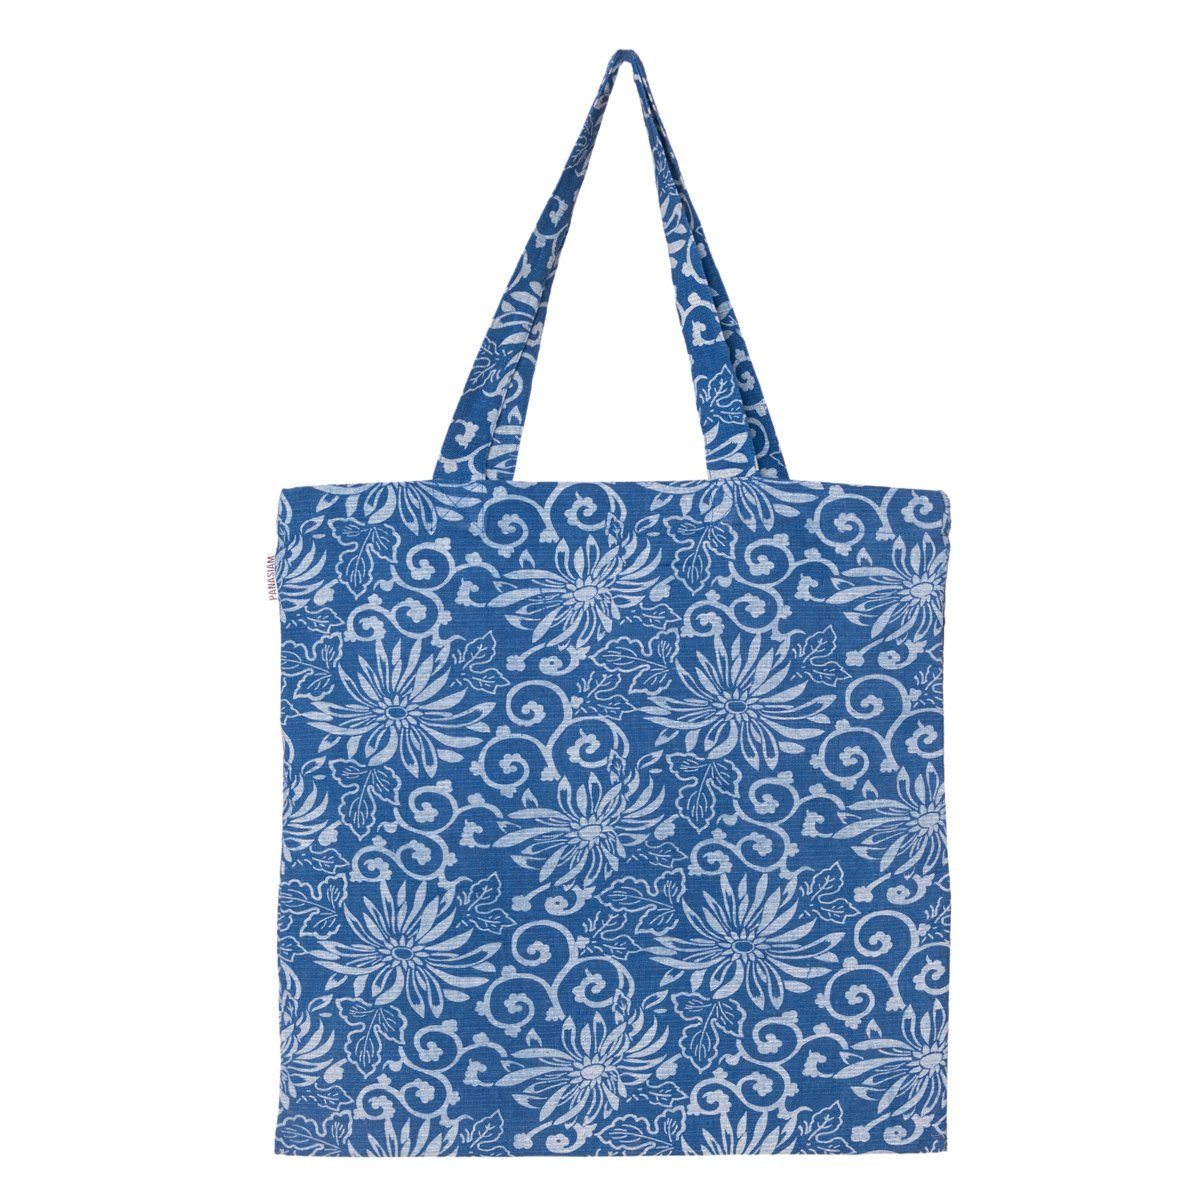 PANASIAM Beuteltasche Geometrix Baumwollbeutel auch als Einkaufstasche oder Schuhbeutel, aus 100% Baumwolle Jutebeutel mit traditionellen japanischen Mustern Blue flower